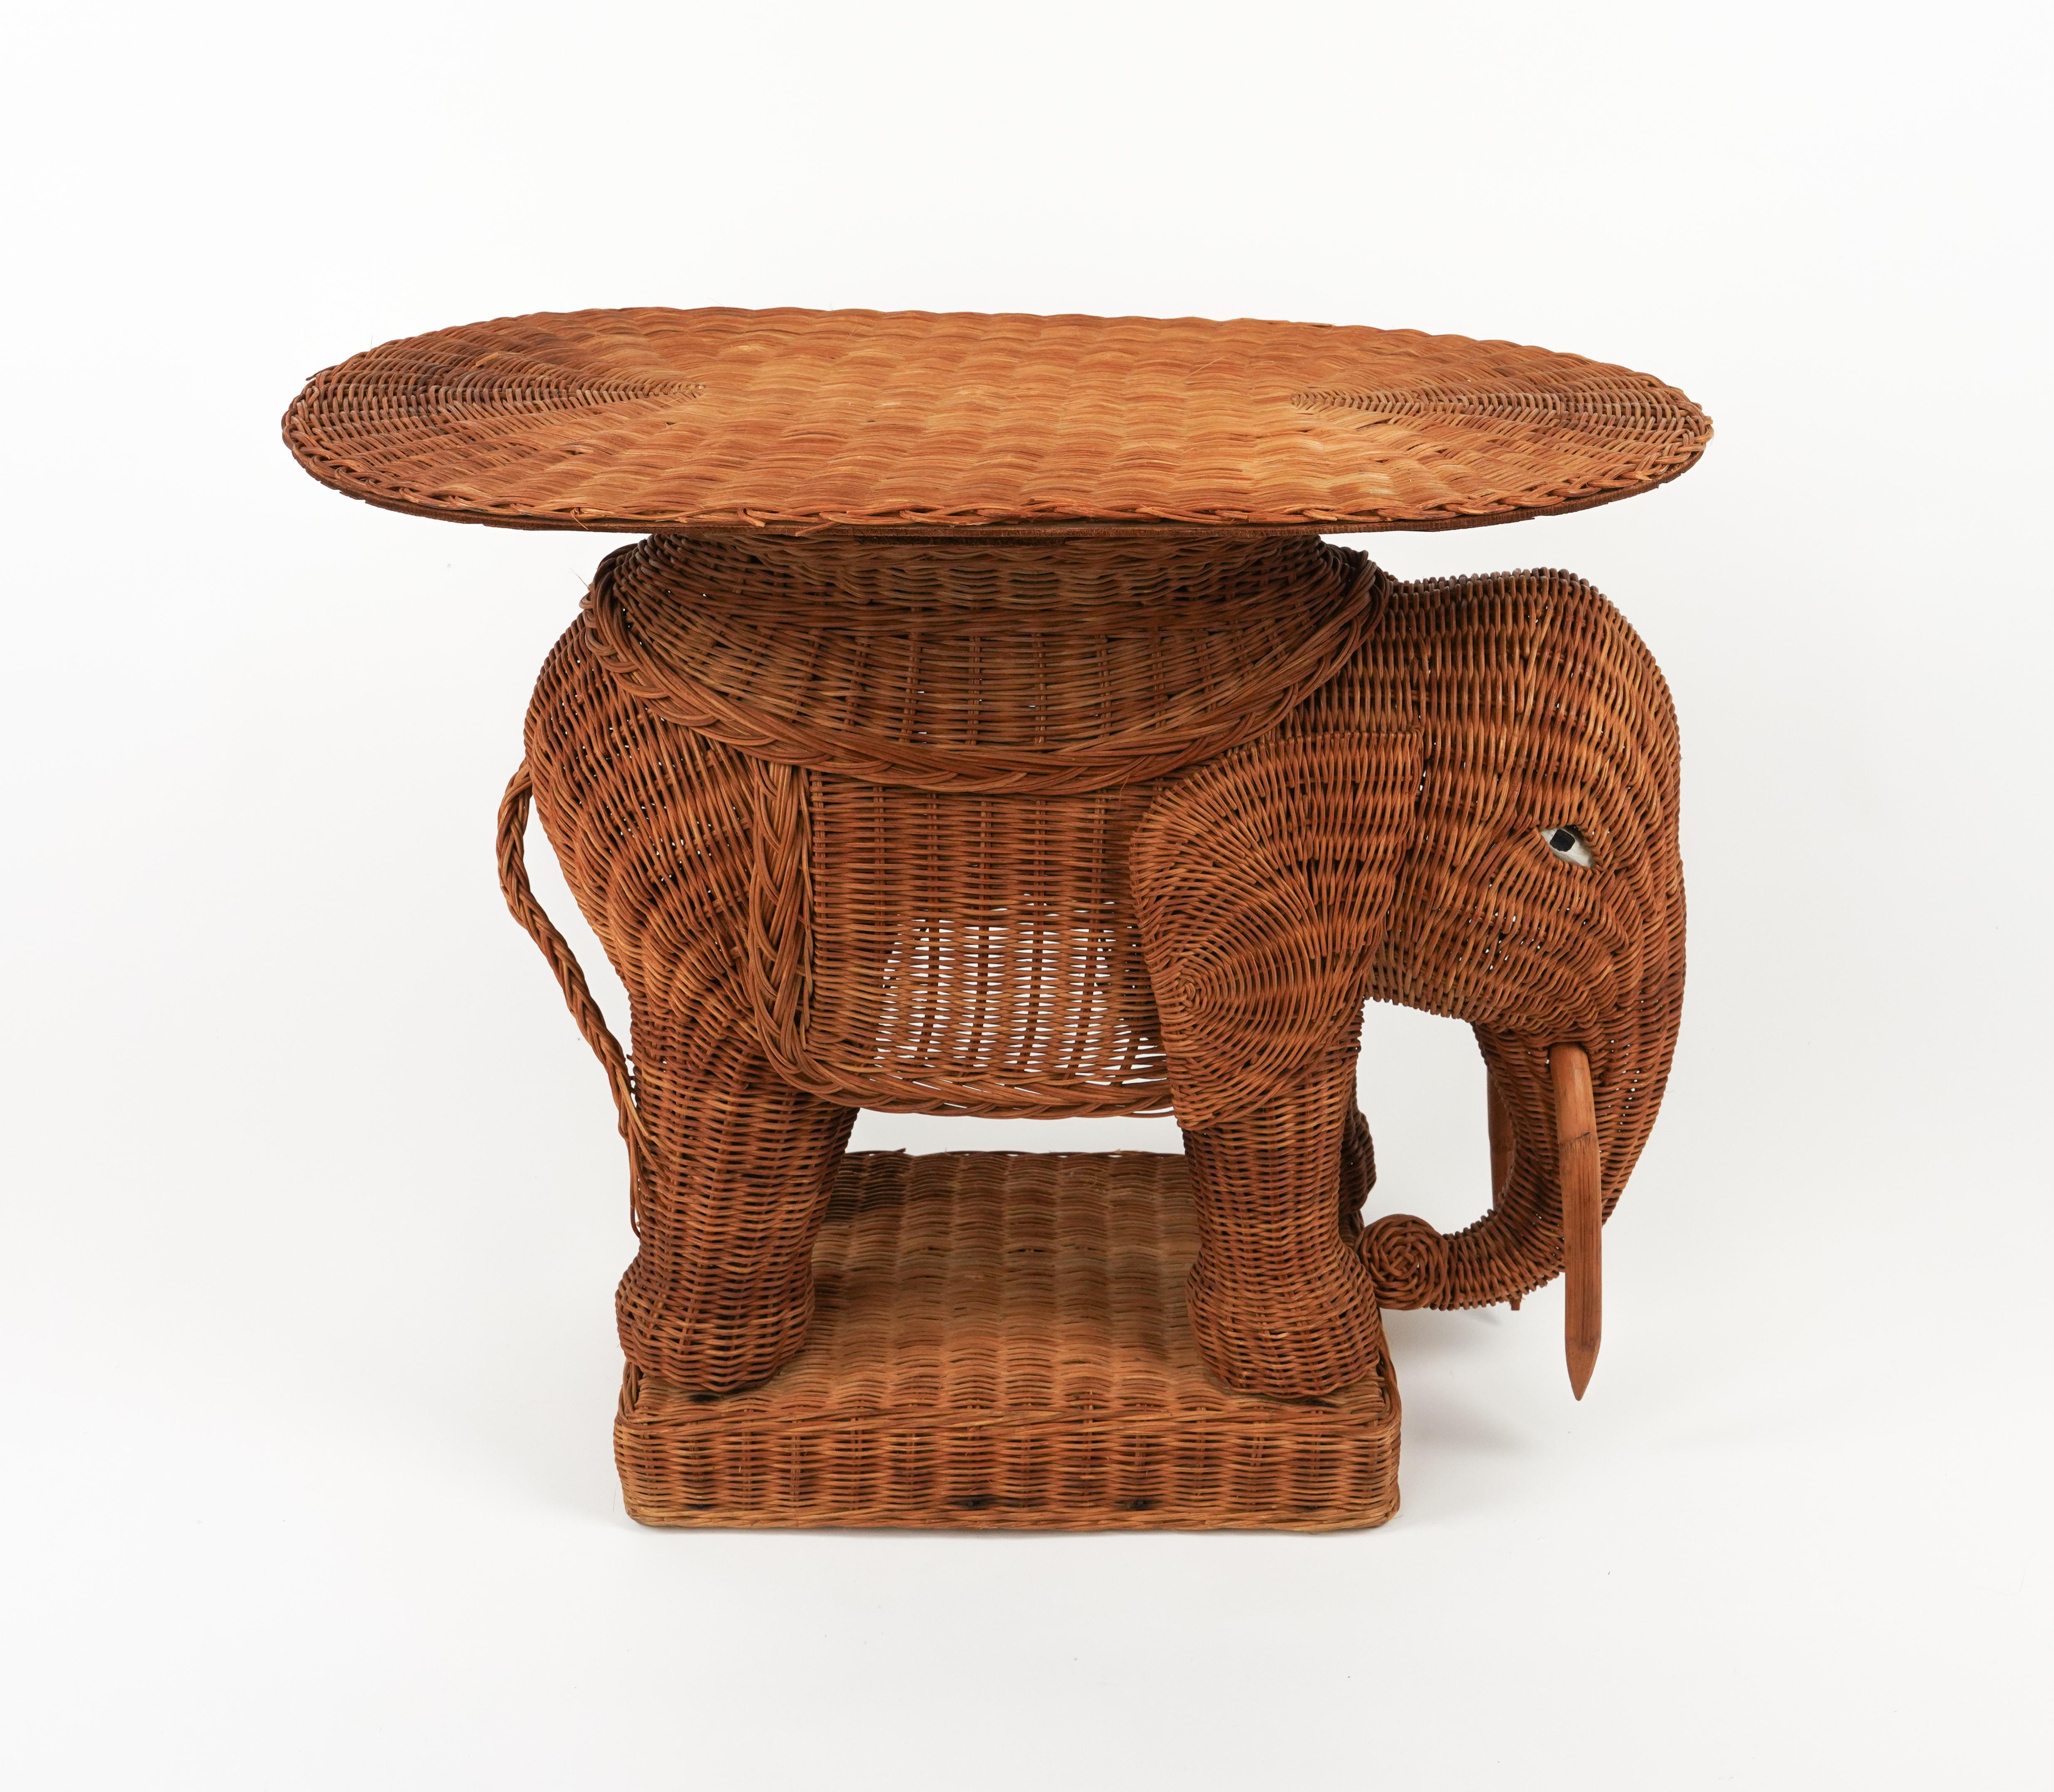 Table basse / table d'appoint en forme d'éléphant en rotin tressé à la main avec des défenses en bois dans le style de Vivai Del Sud.

Il est également doté d'un plateau amovible en osier.

Fabriqué en Italie dans les années 1960.

Vivai del sud,